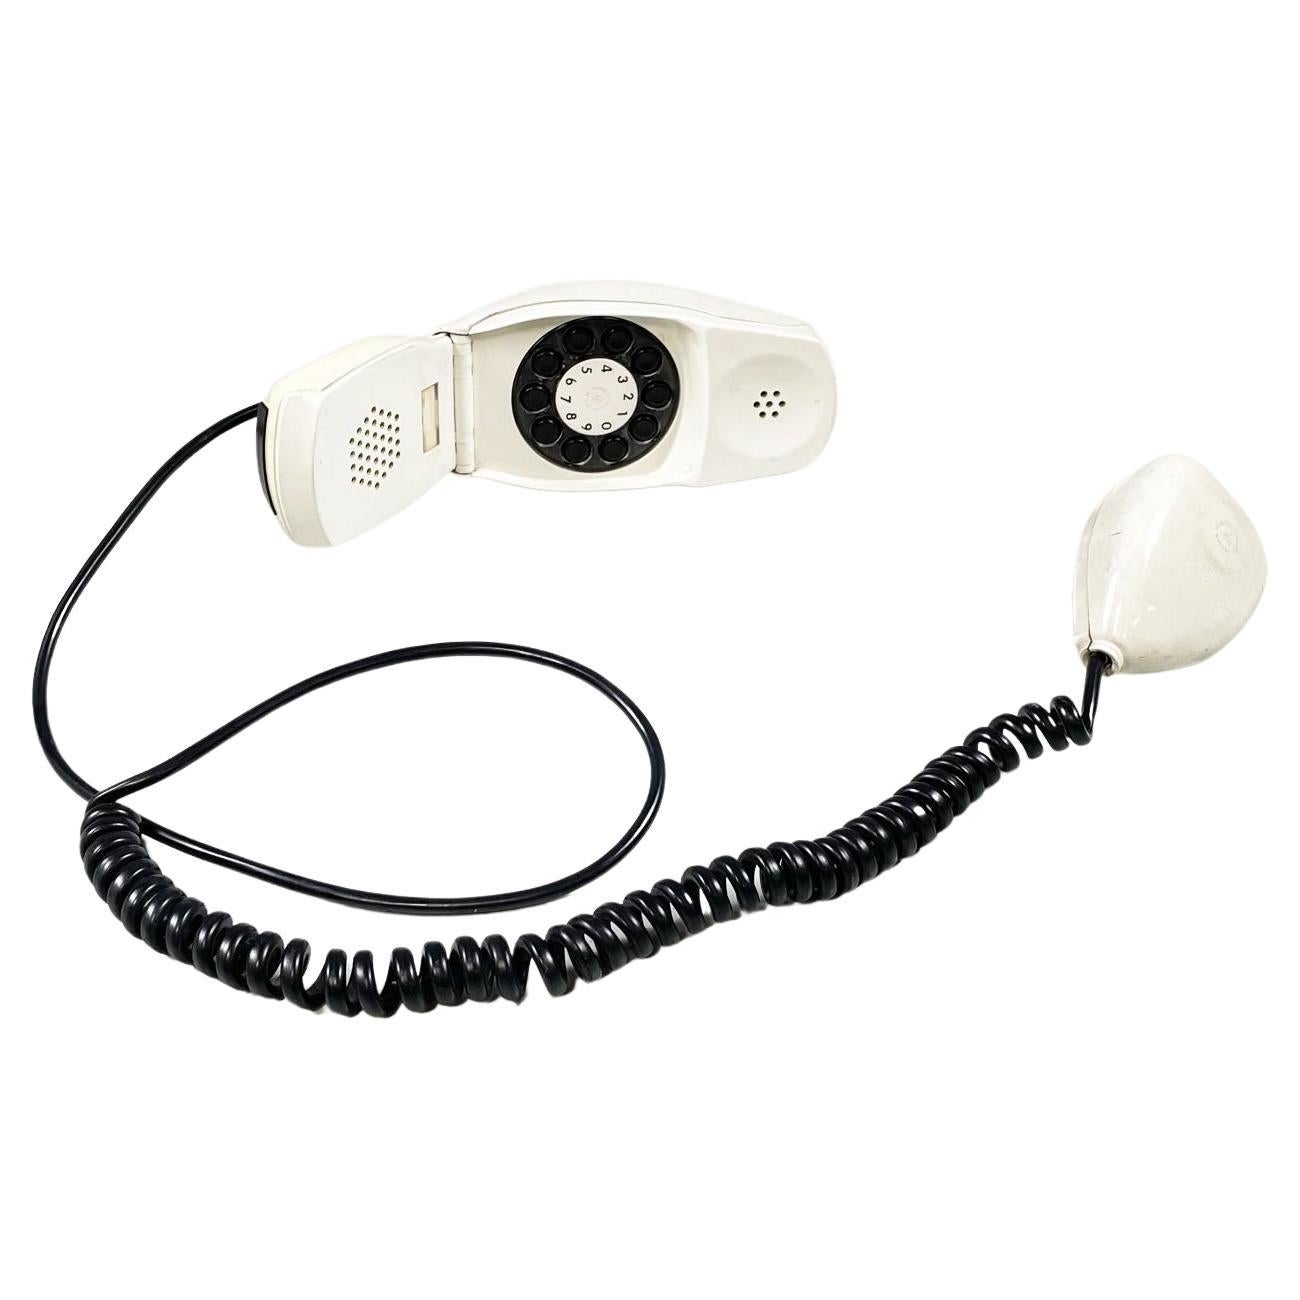 Telephone moderne allemand blanc Grillo de Zanuso Sapper pour Siemens, années 1960